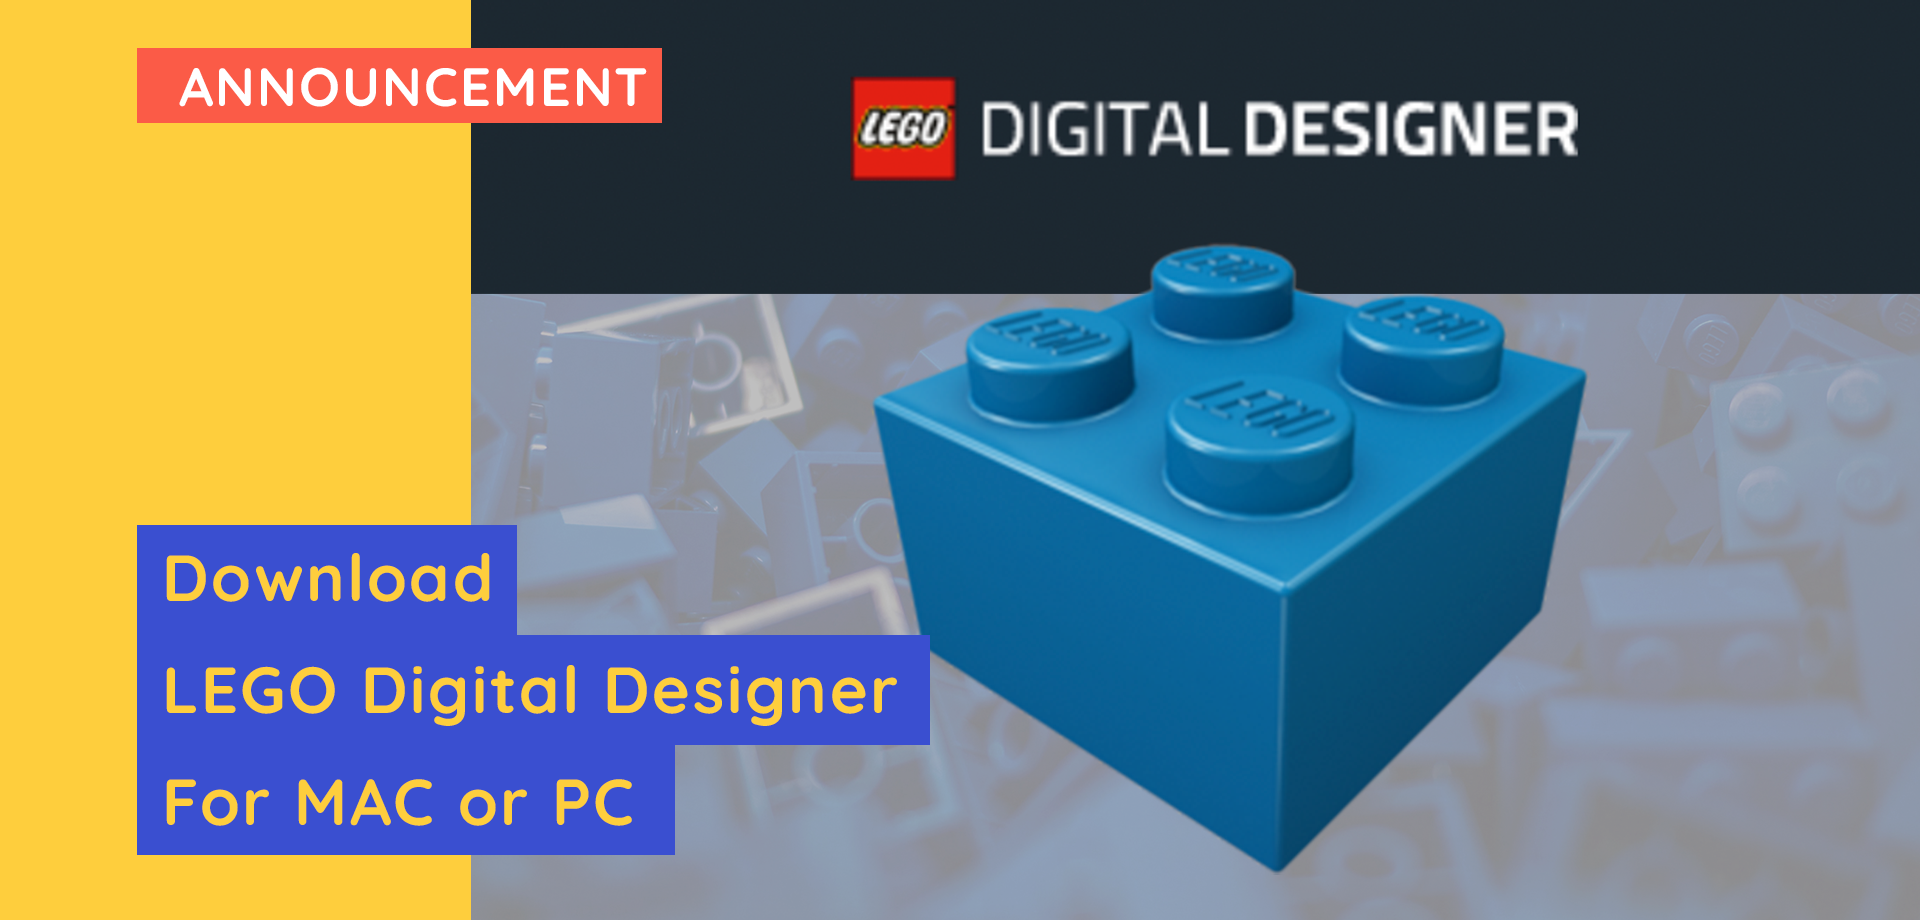 LEGO Digital Designer here!